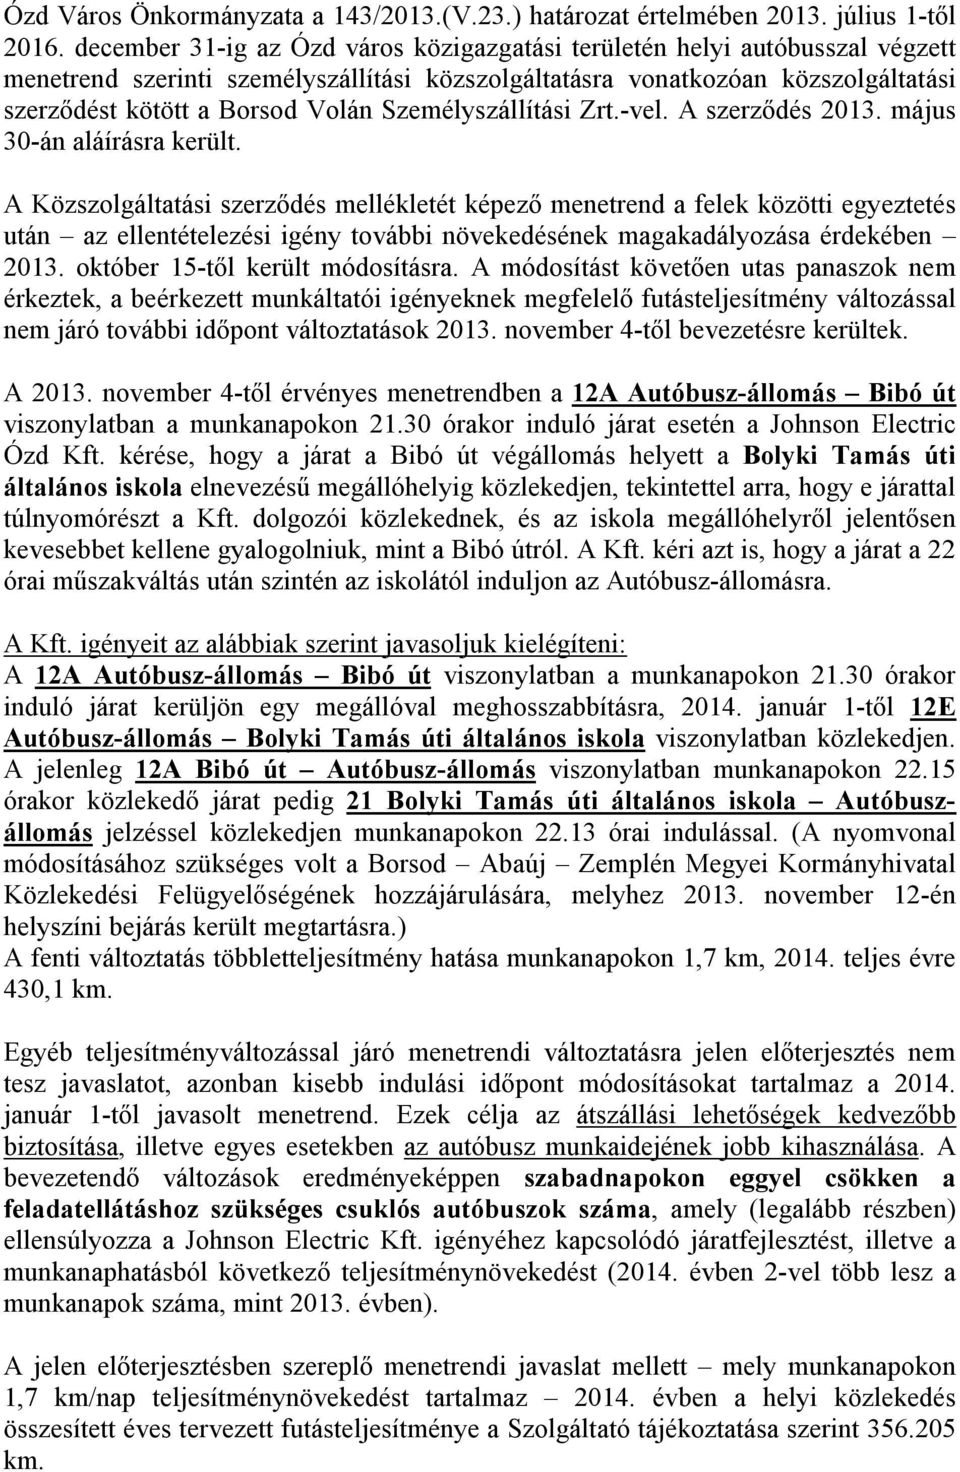 Személyszállítási Zrt.-vel. A szerződés 2013. május 30-án aláírásra került.